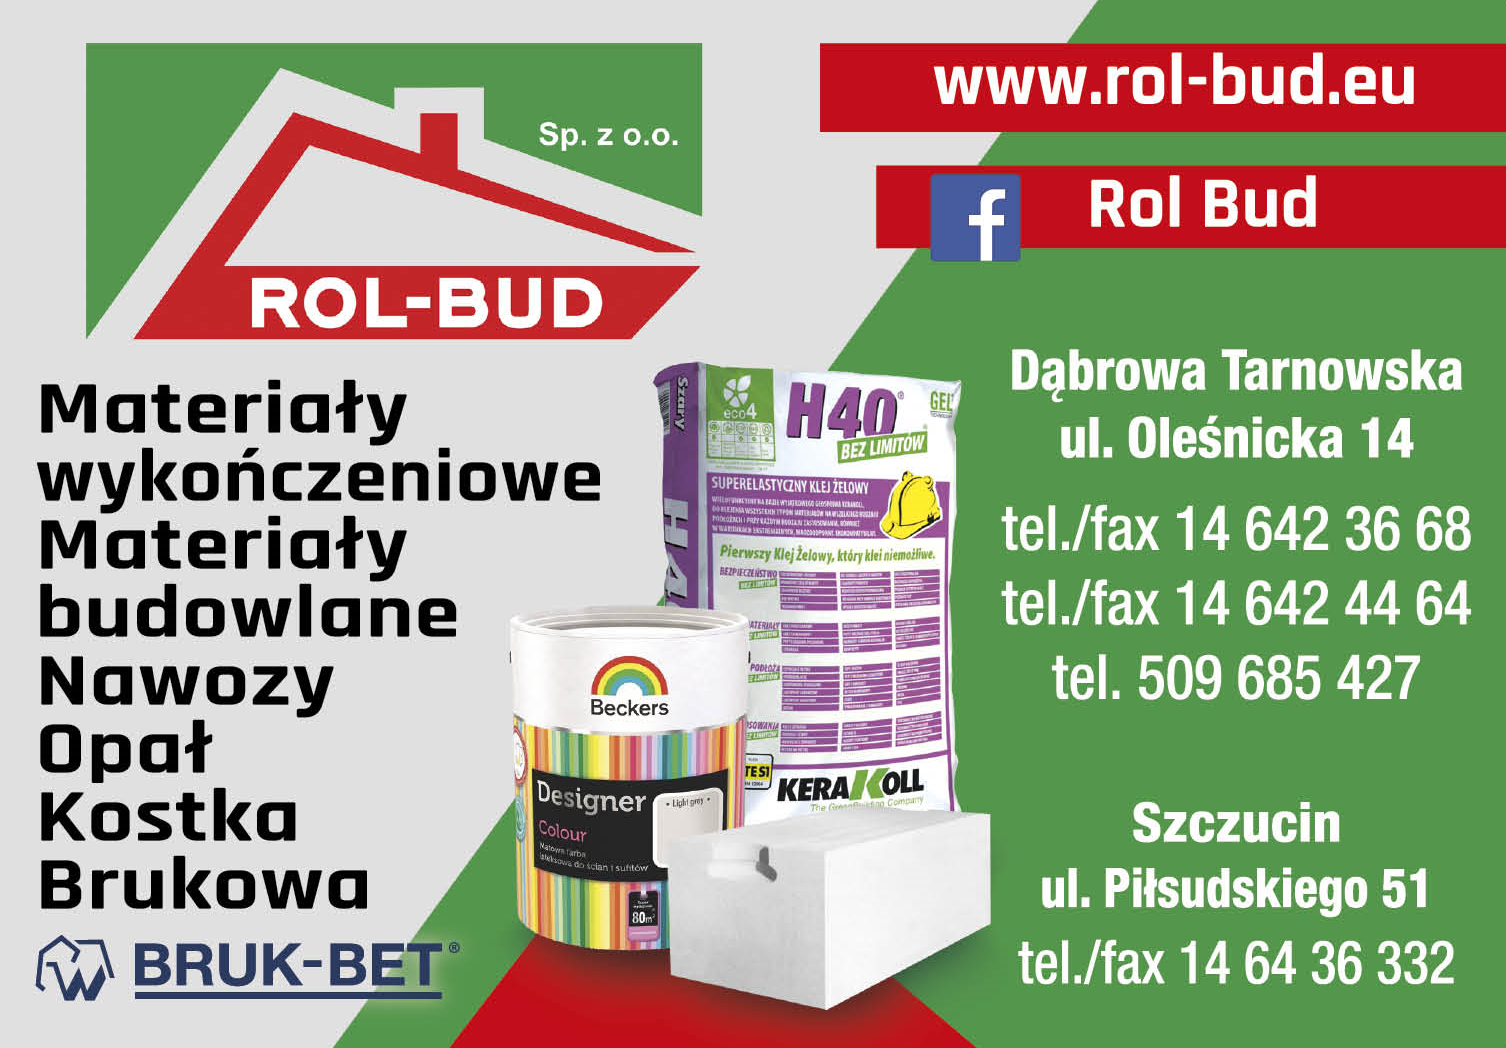 ROL-BUD Sp. z o.o. Dąbrowa Tarnowska Materiały Wykończeniowe / Materiały Budowlane / Nawozy / Opał